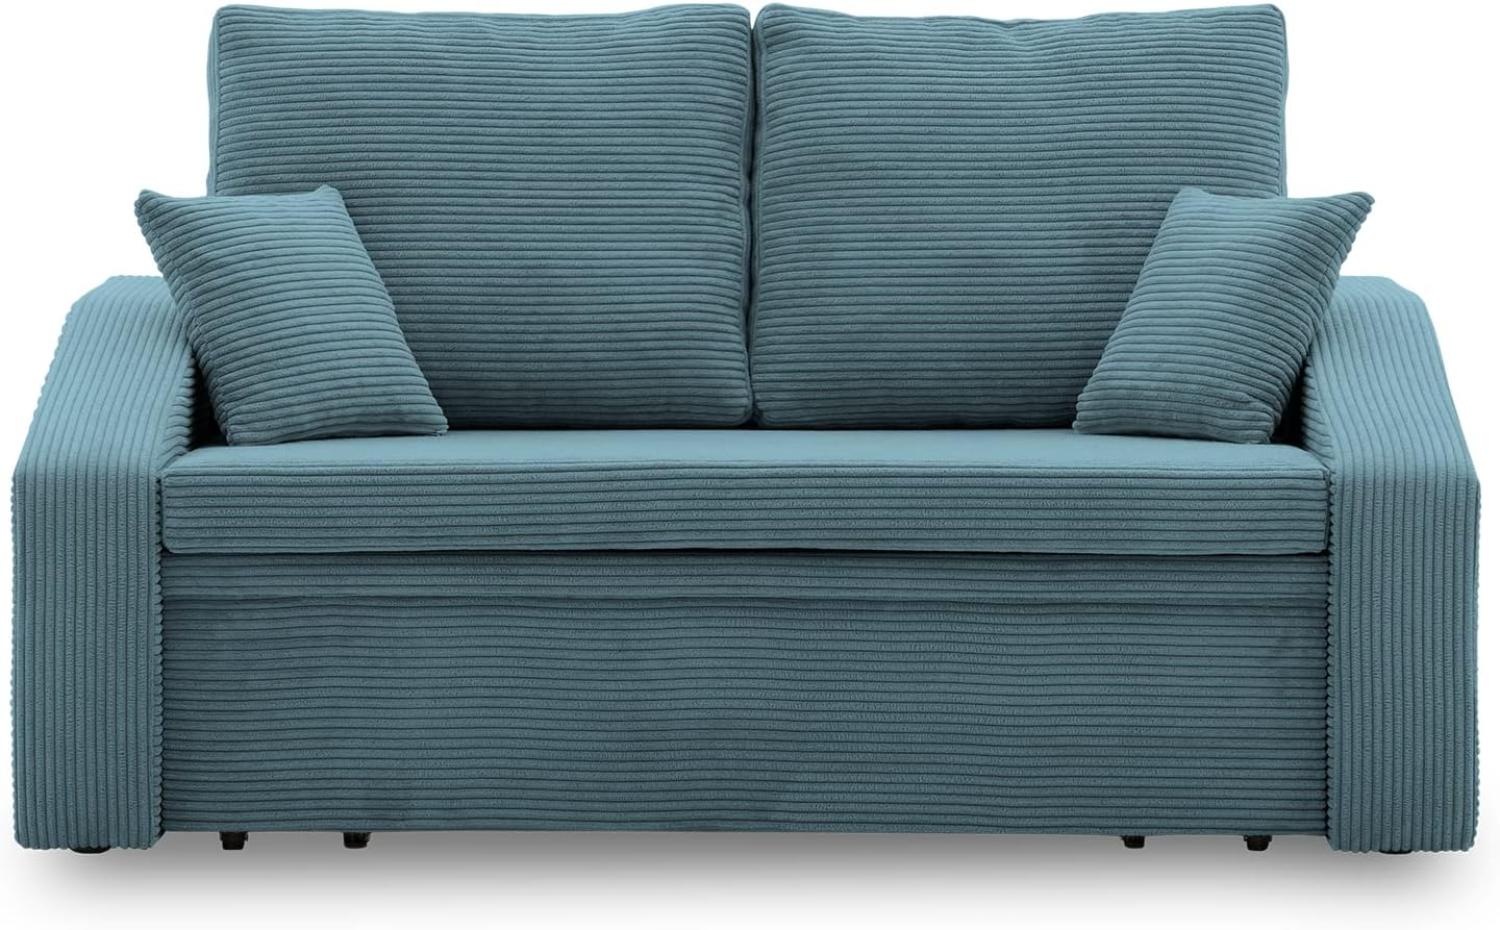 Sofa Dorma mit schlaffunktion, einfacher Aufbau, modernes Design, polstermöbel. Schlafcouch zum Wohnzimmer. Widerstandsfähiges, Minimalistisches Design (POSO 026) Bild 1